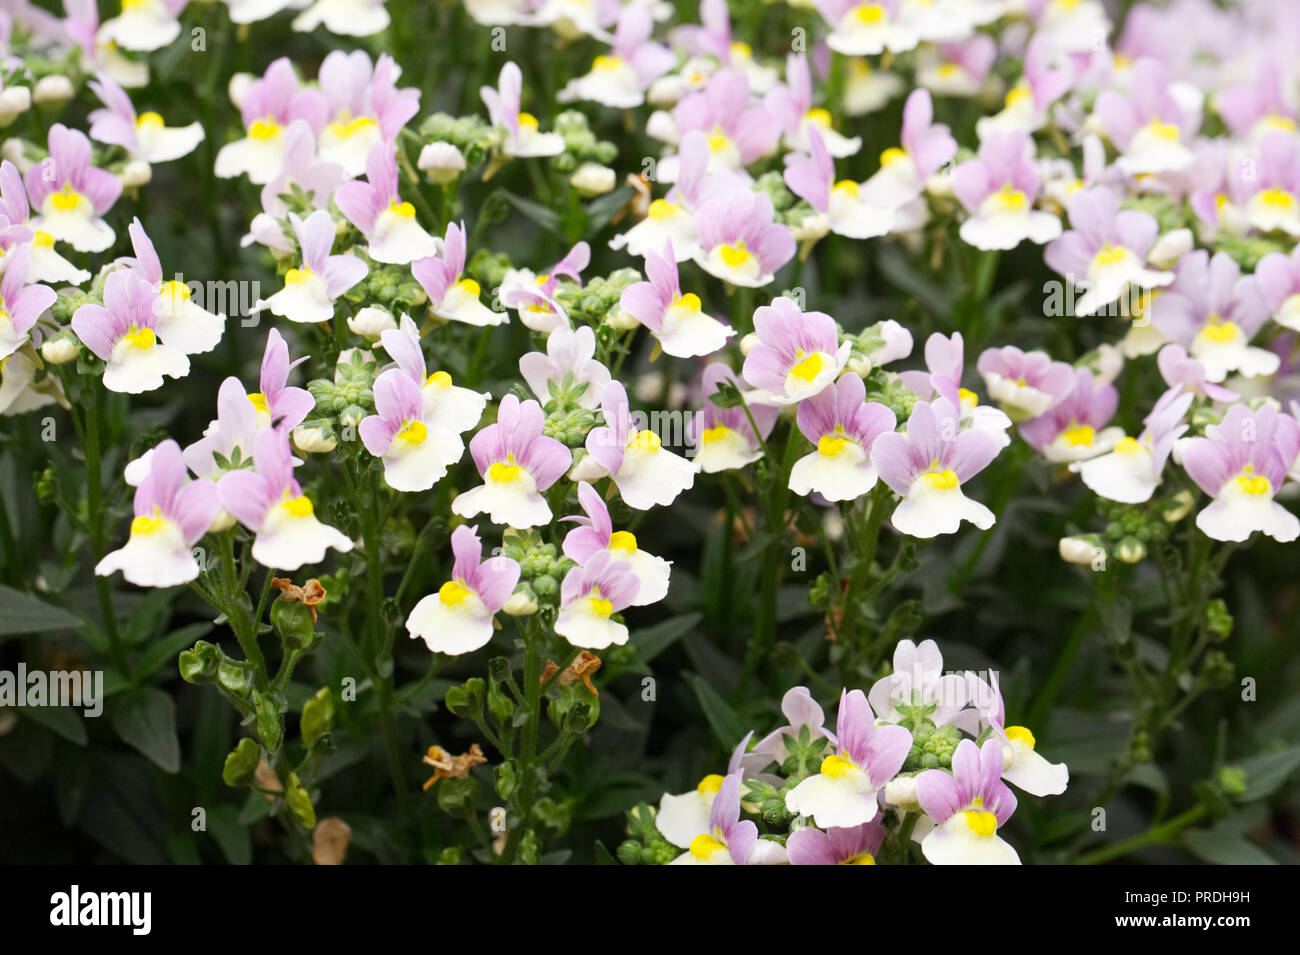 Nemesia 'Easter Bonnet' flowers. Stock Photo